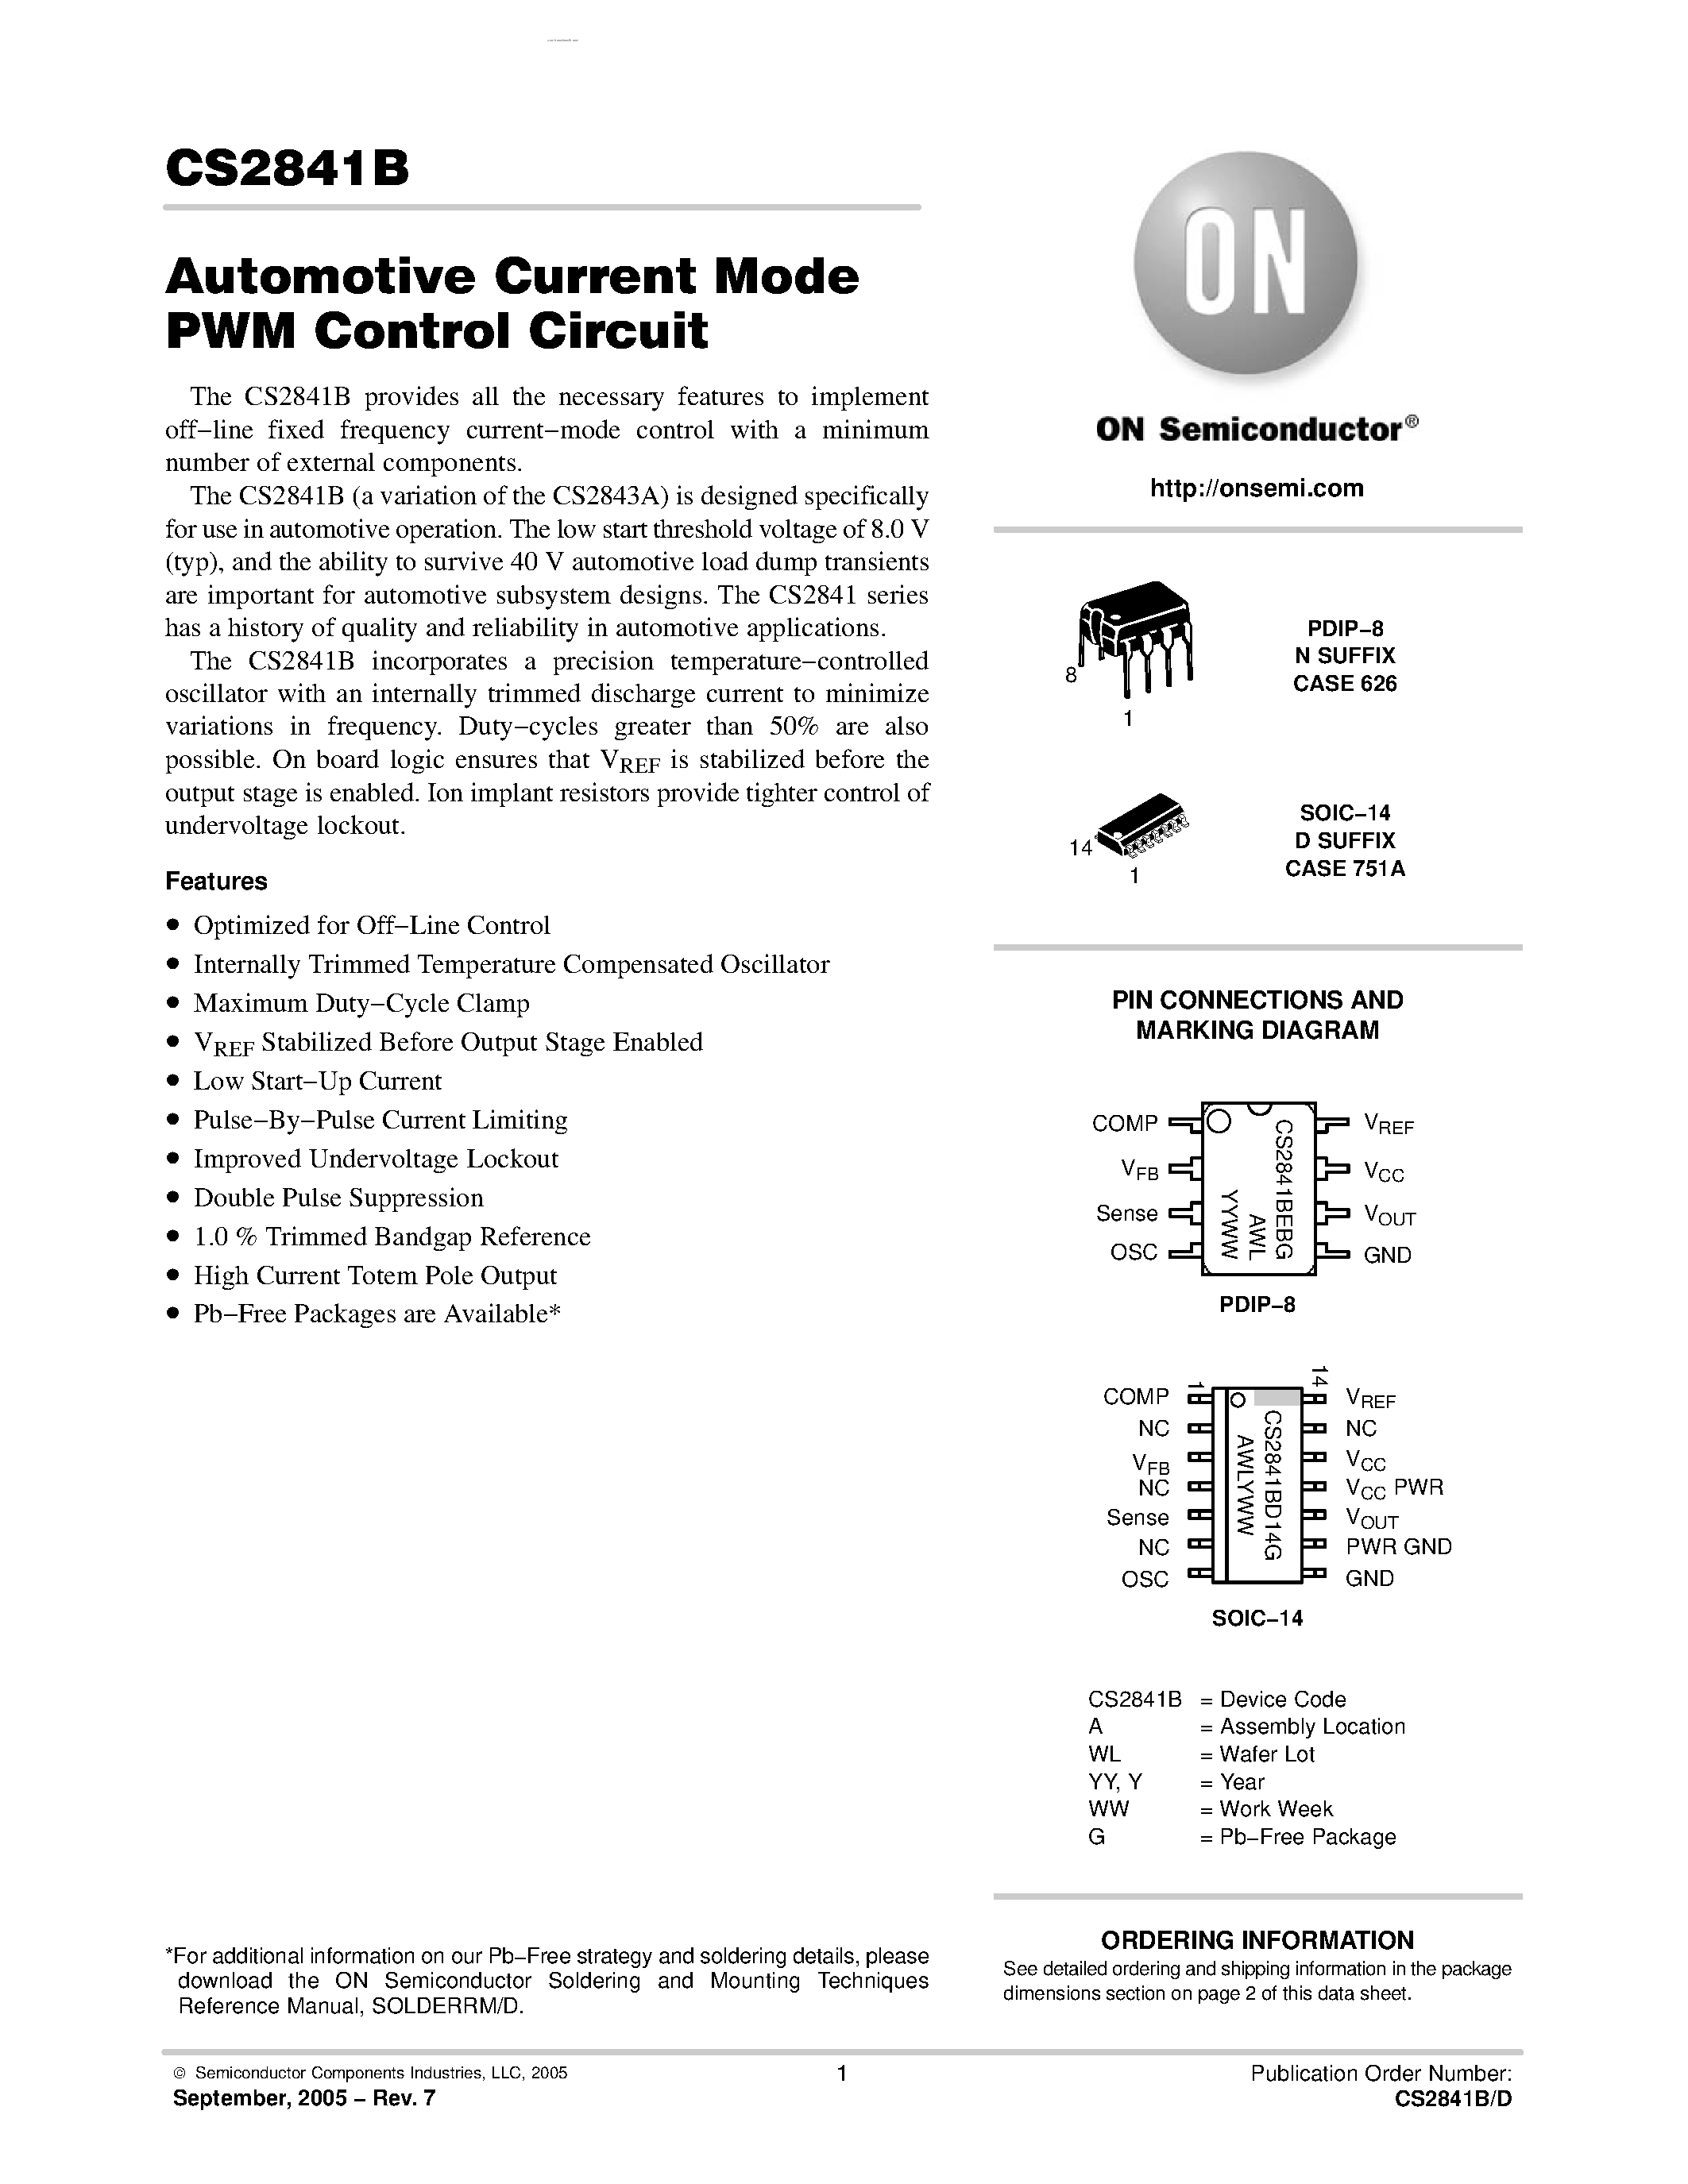 Даташит CS2841B - Automotive Current Mode PWM Control Circuit страница 1